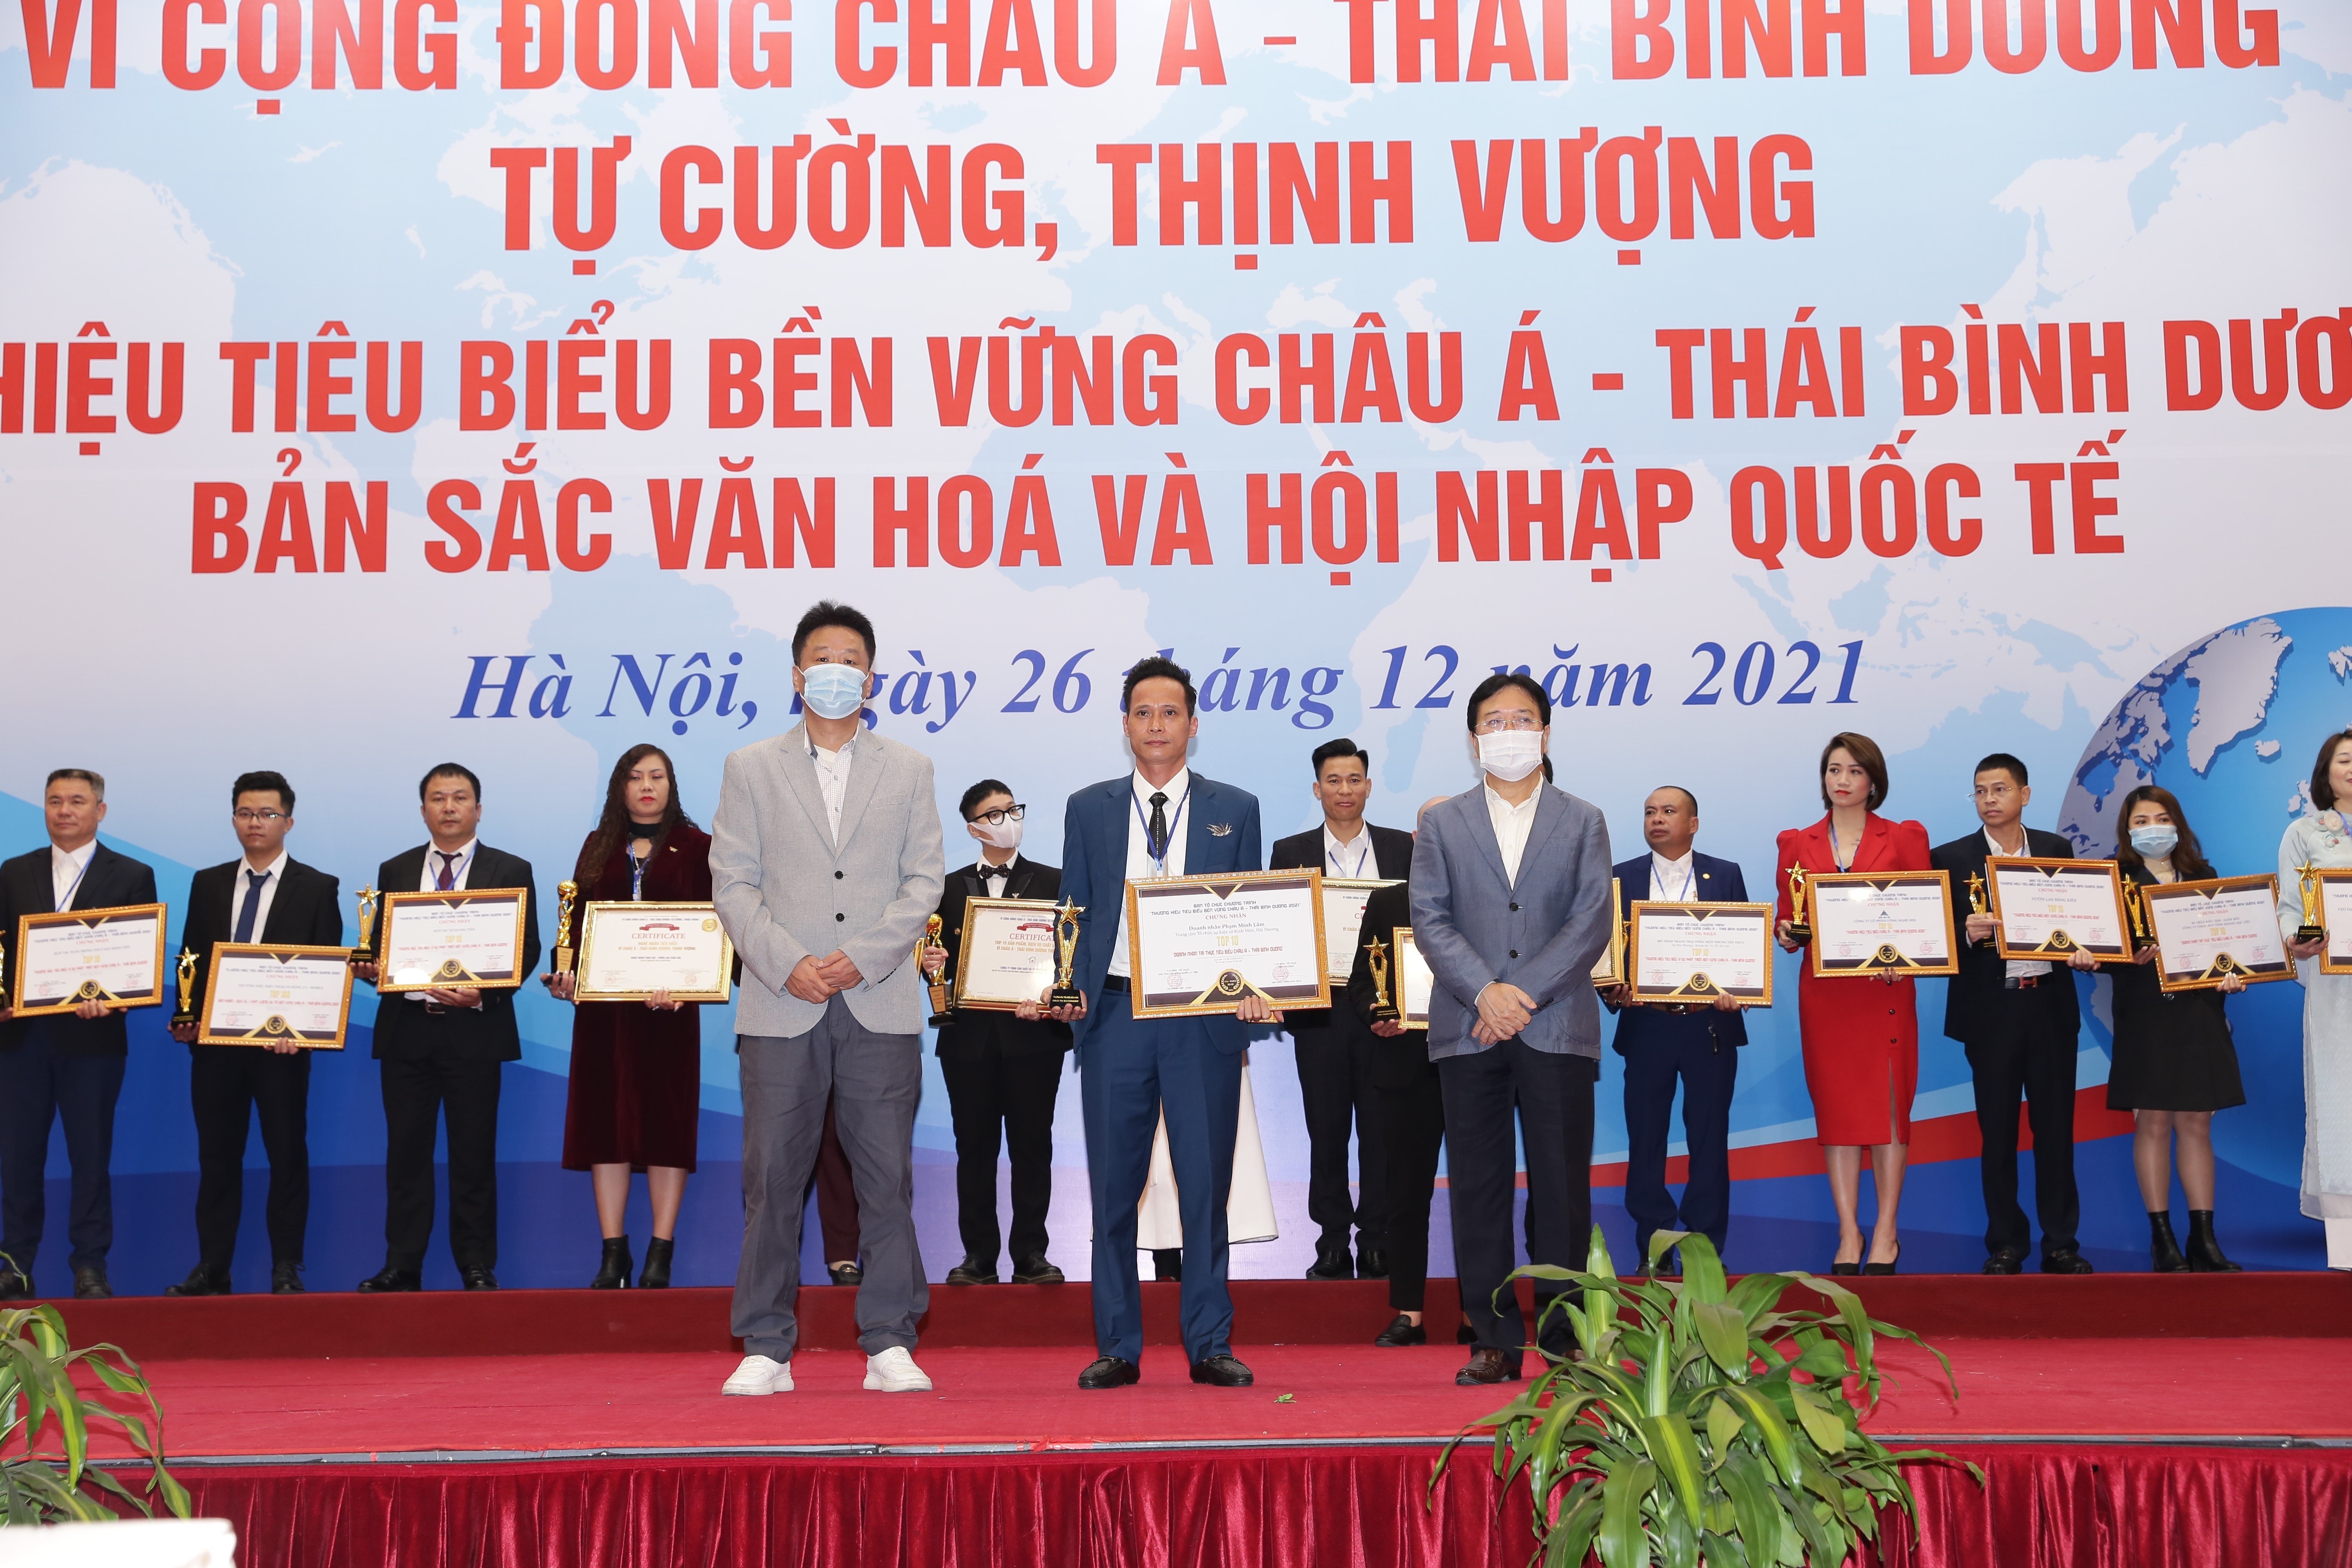 Doanh nhân Phạm Minh Lâm được tôn vinh doanh nhân vì cộng đồng Châu Á - Thái Bình Dương thịnh vượng